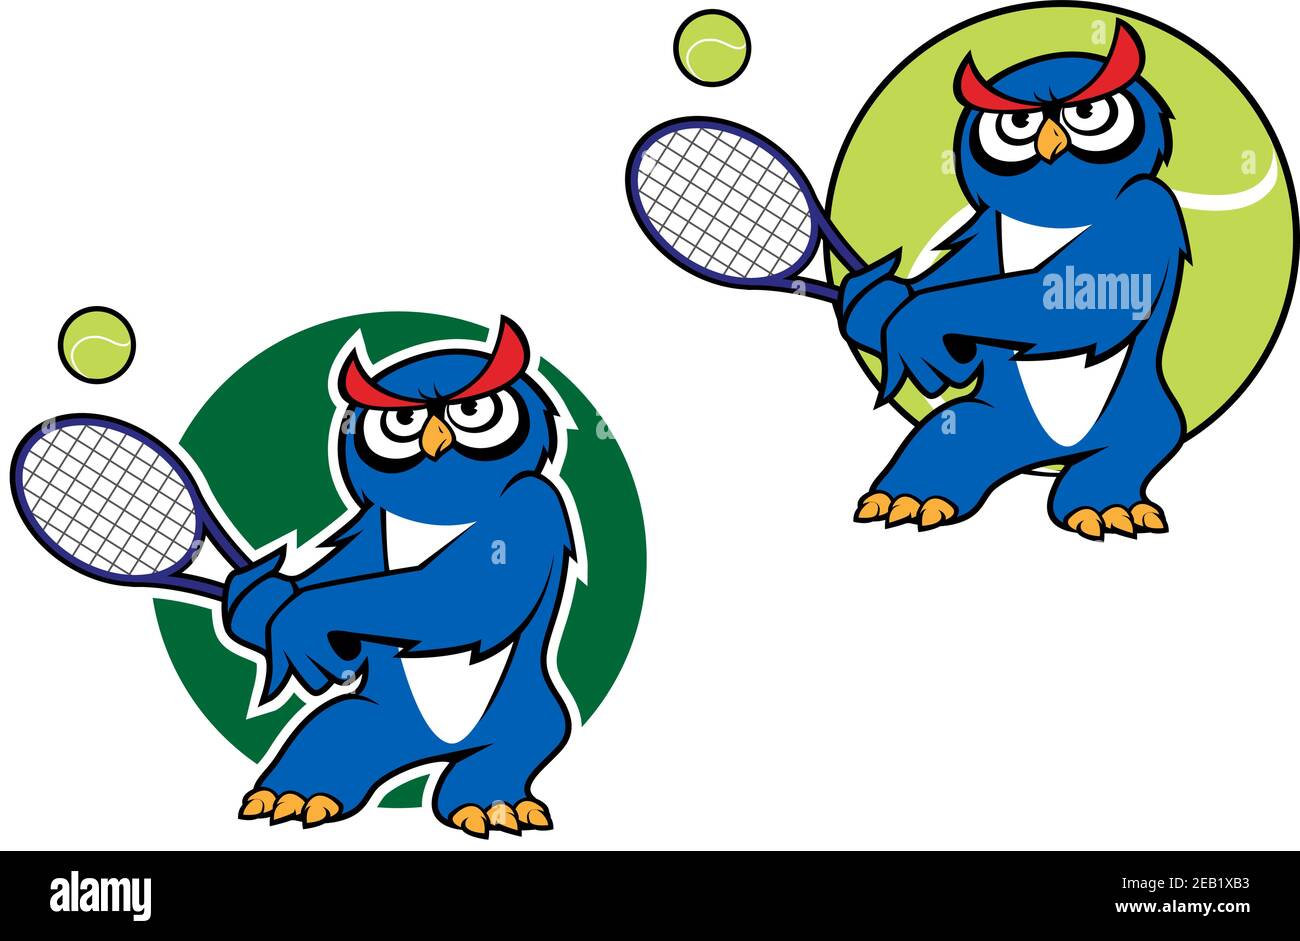 Gufo blu cartoon che gioca a tennis con palla da tennis sul sfondo e  seconda variante con sfondo verde scuro adatto allo sport mascot o emblem  desi Immagine e Vettoriale - Alamy